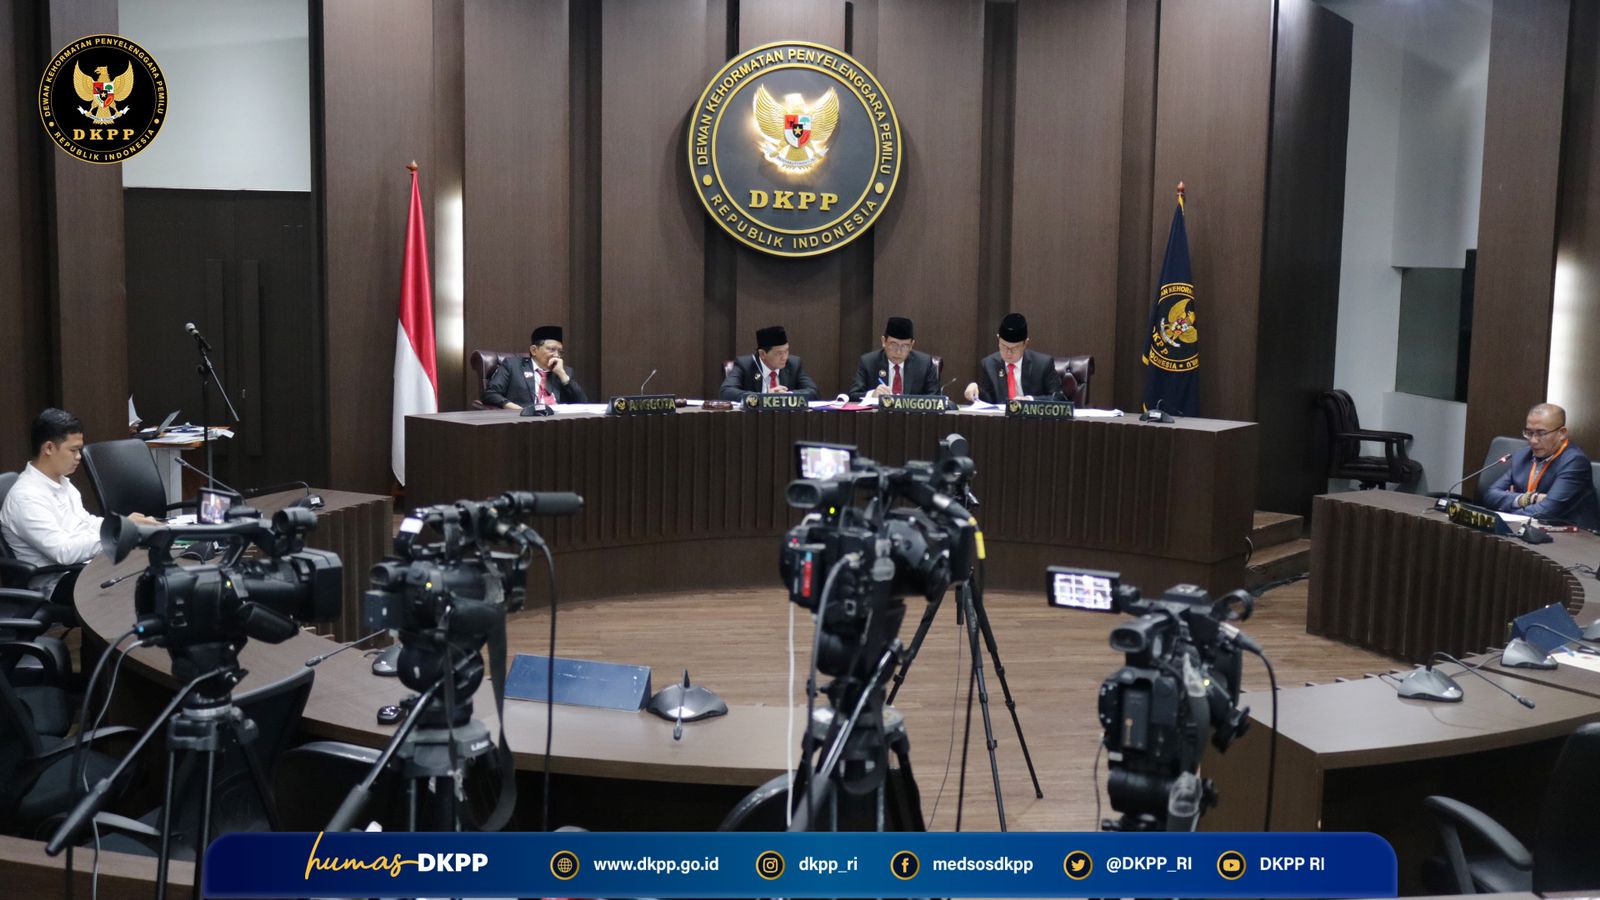 Ketua KPU Hasyim Asy'ari Resmi Dipecat Lewat Sidang DKPP, Terbukti langgar Kode Etik